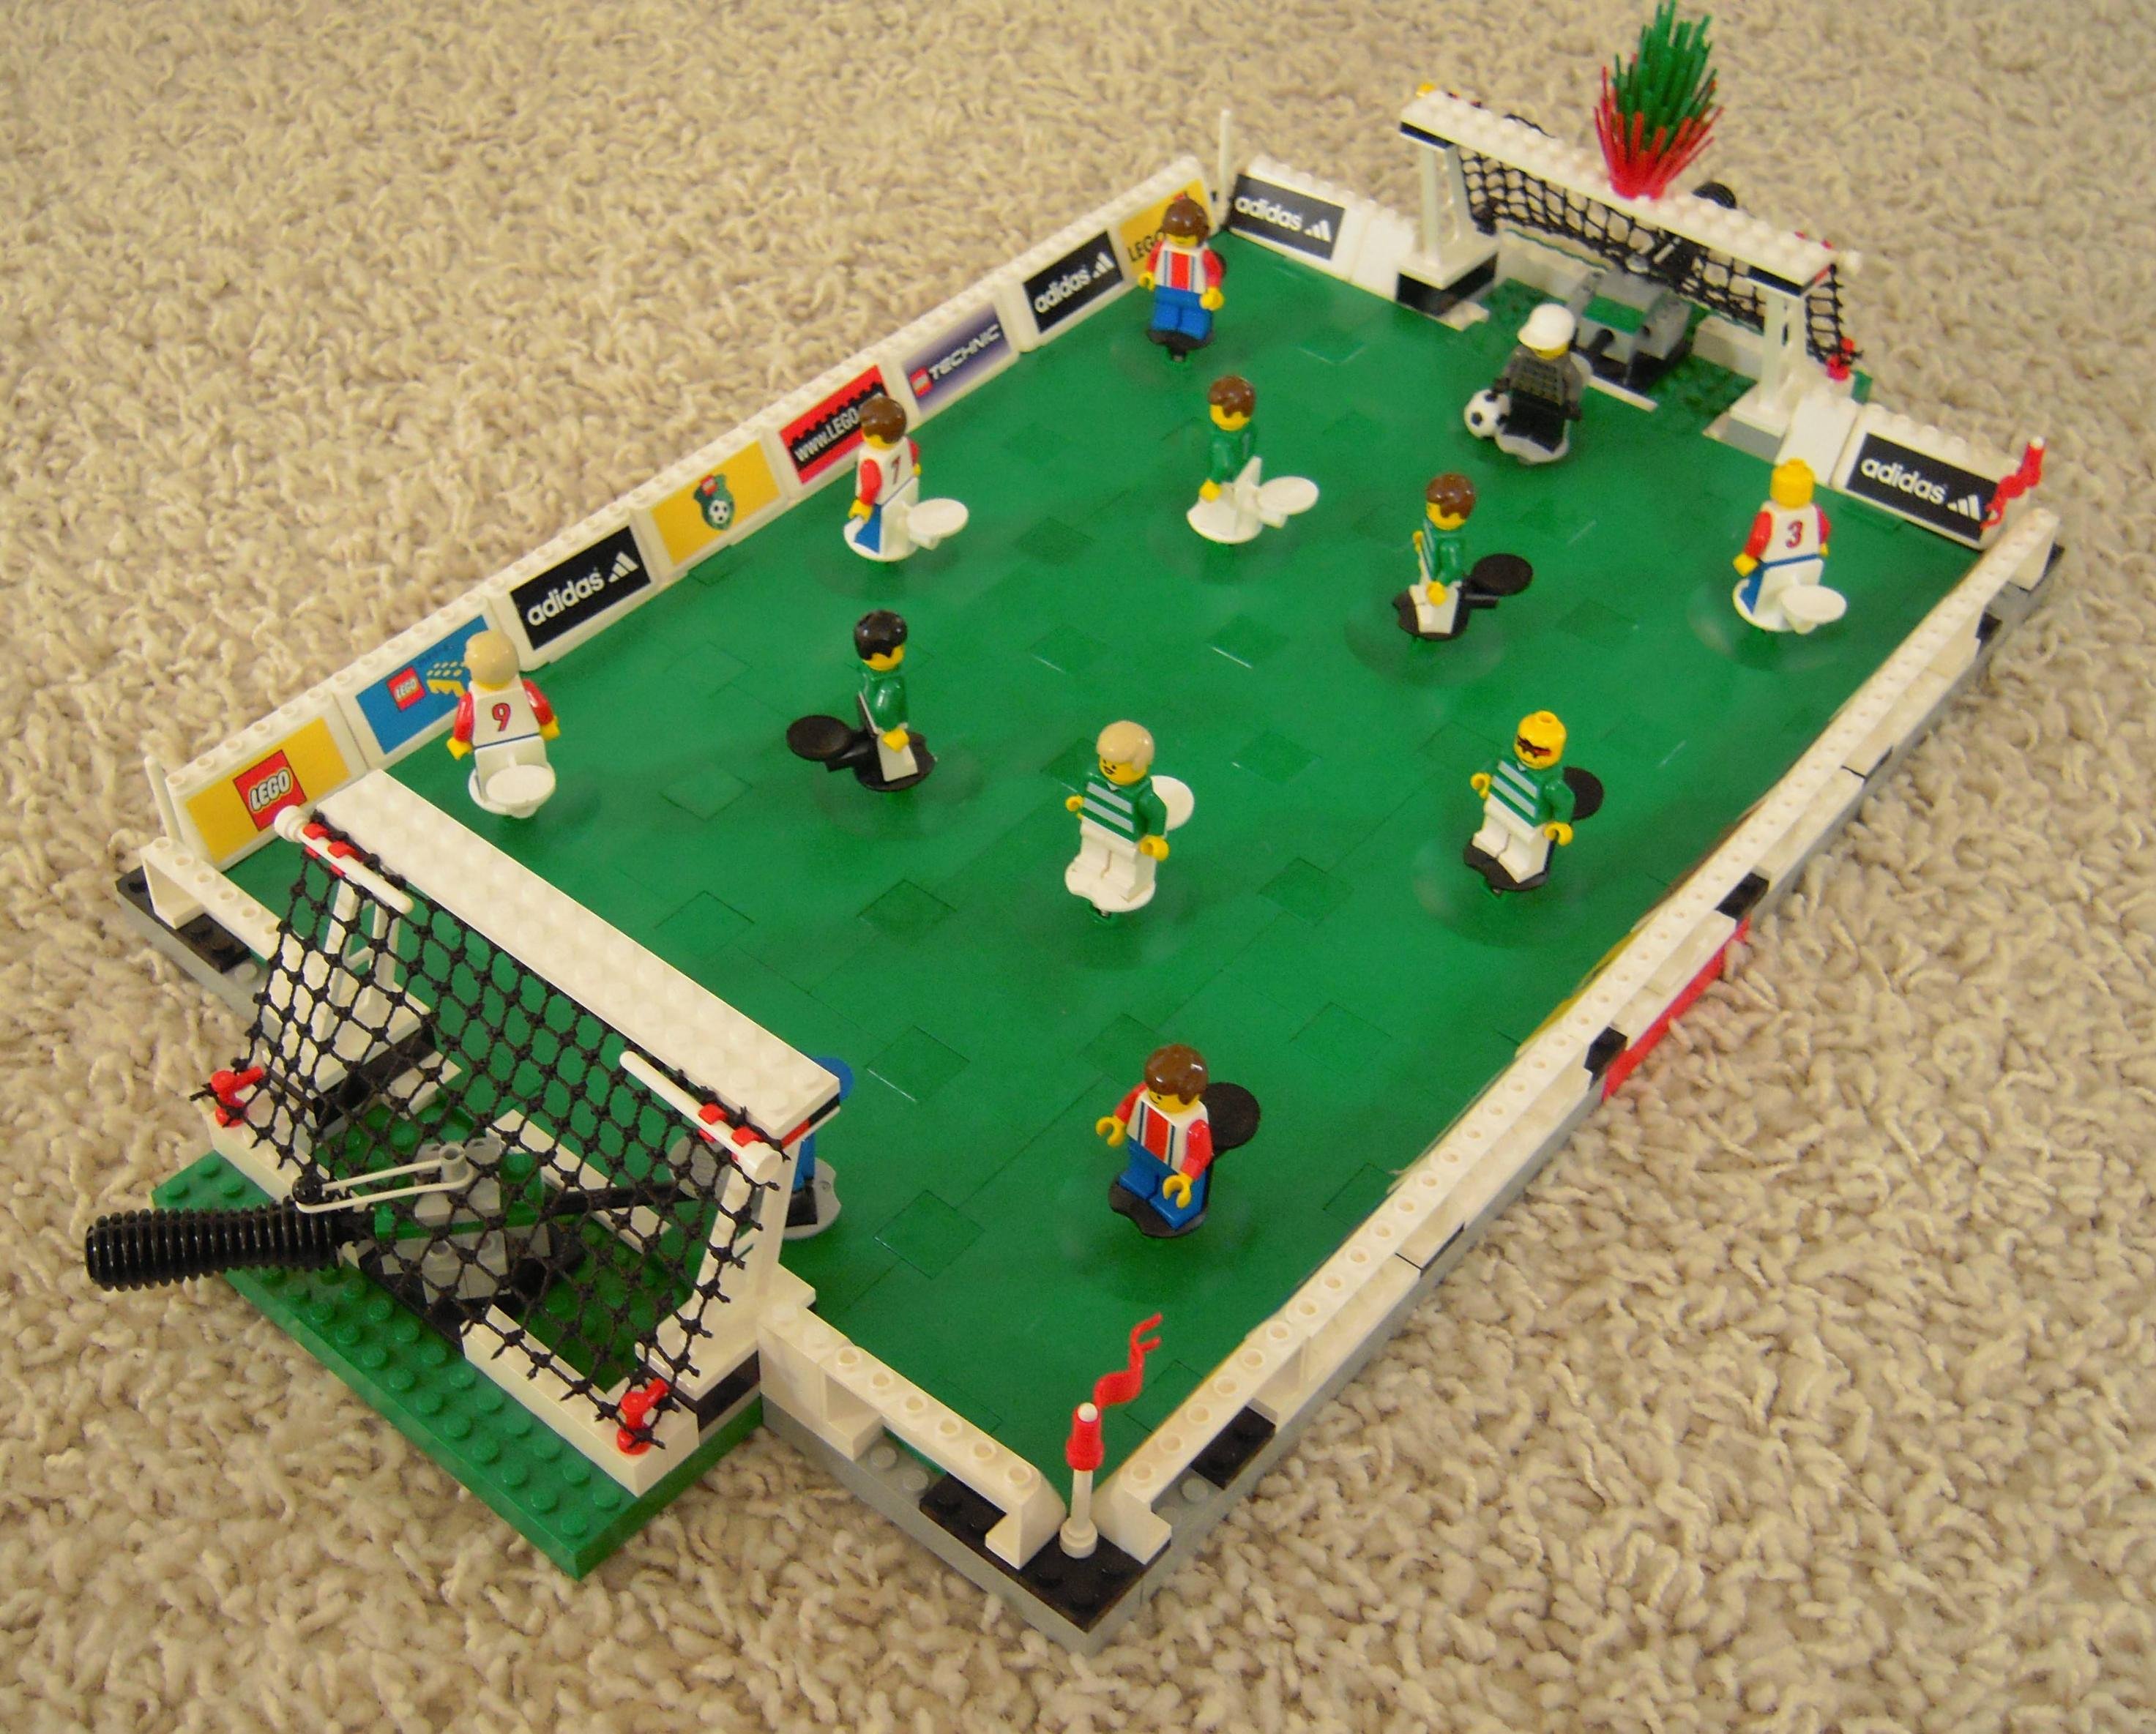 Husk Ernest Shackleton Sudan Kan Lego fodbolddele (fodbold) bruges til andet end fodbold?